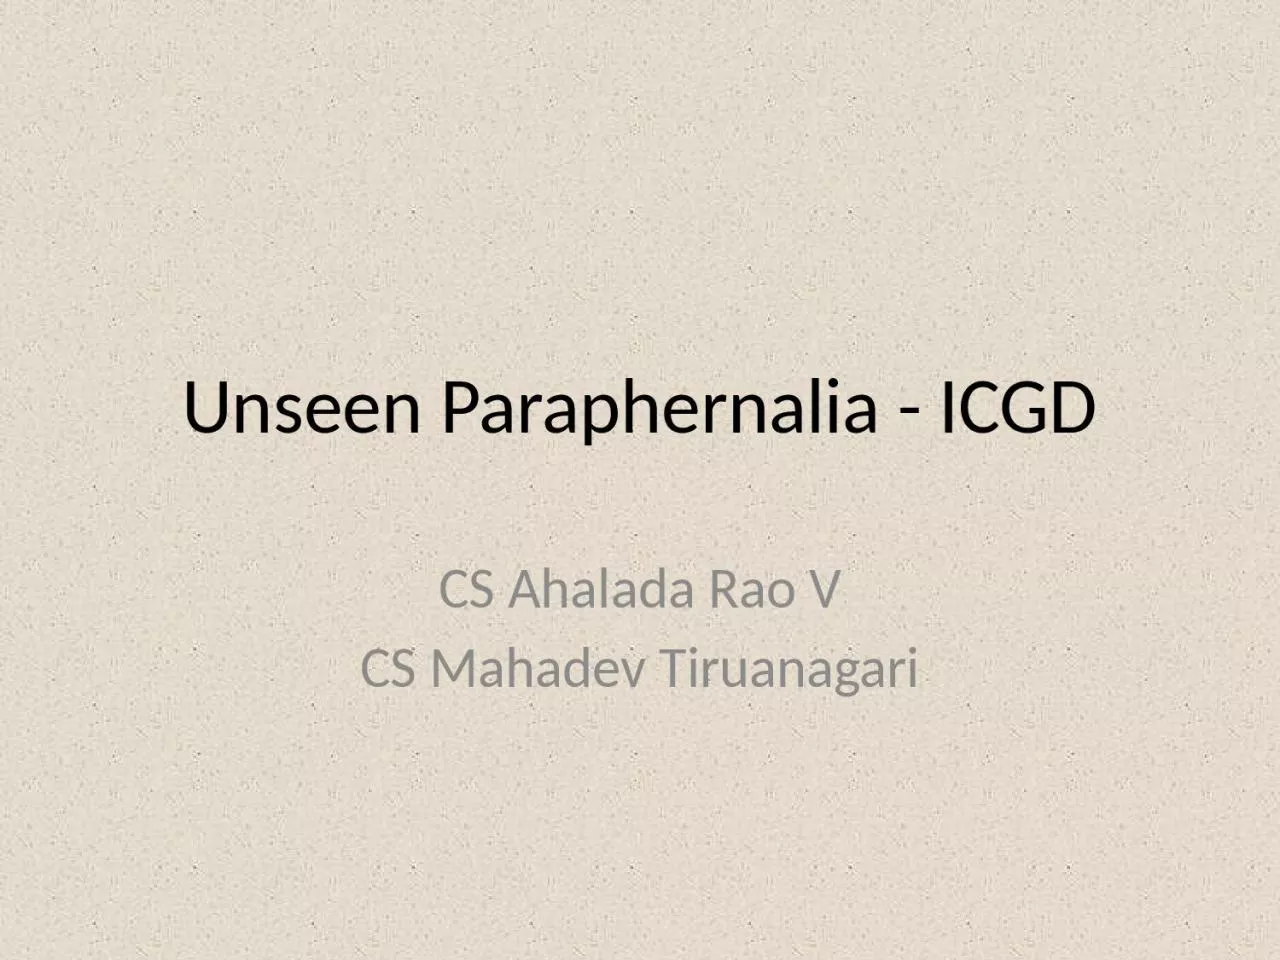 Unseen Paraphernalia - ICGD